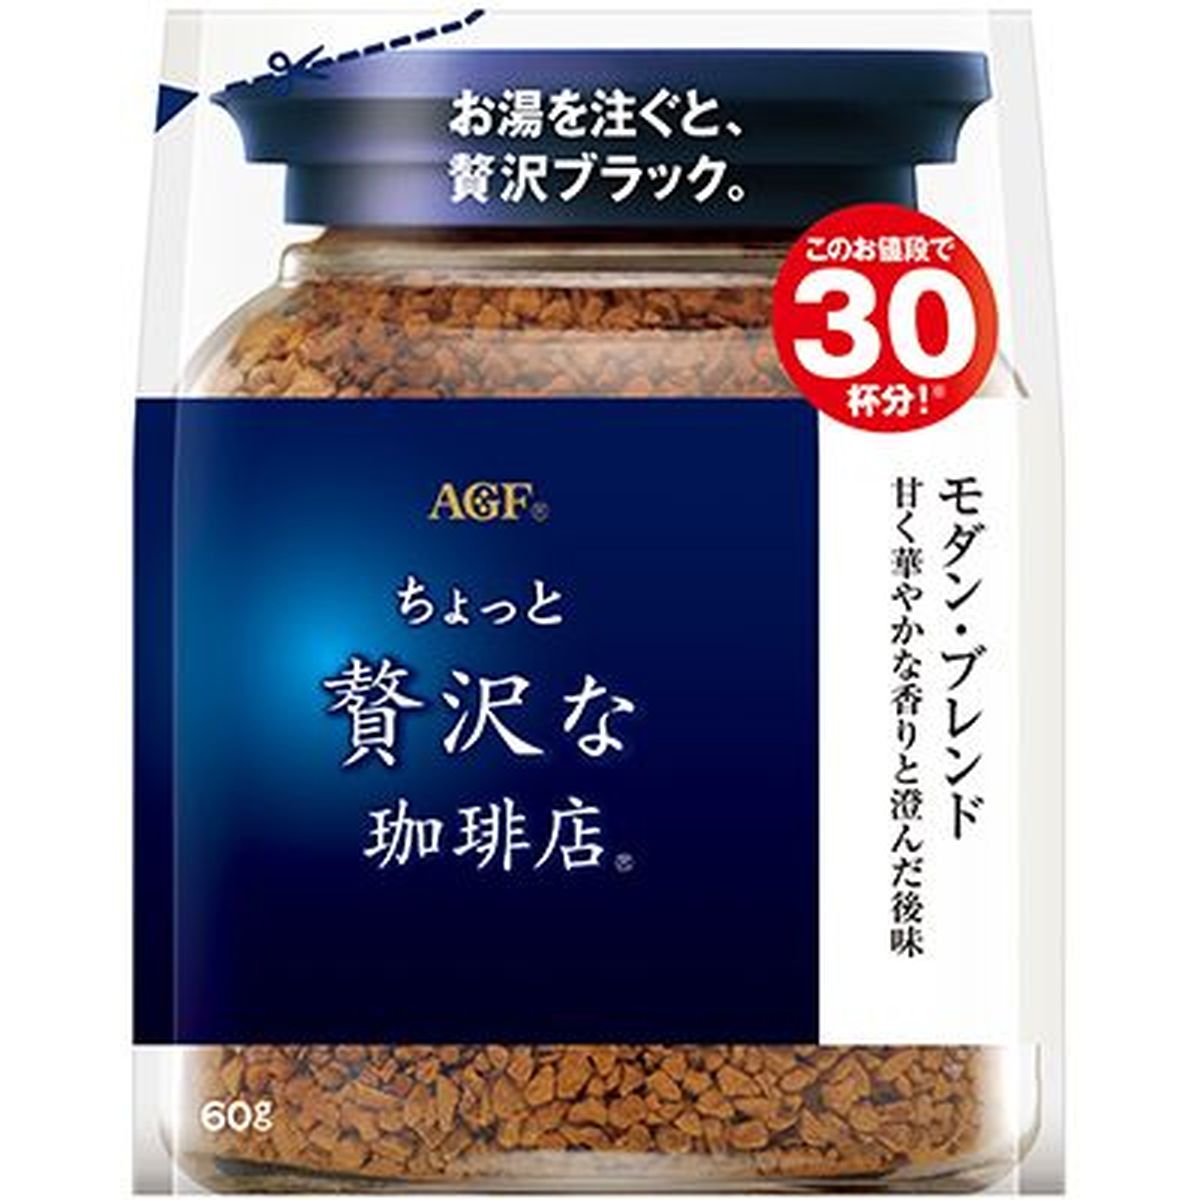 【12個入リ】AGF チョット贅沢ナ珈琲店 モダンブレンド 袋 60g